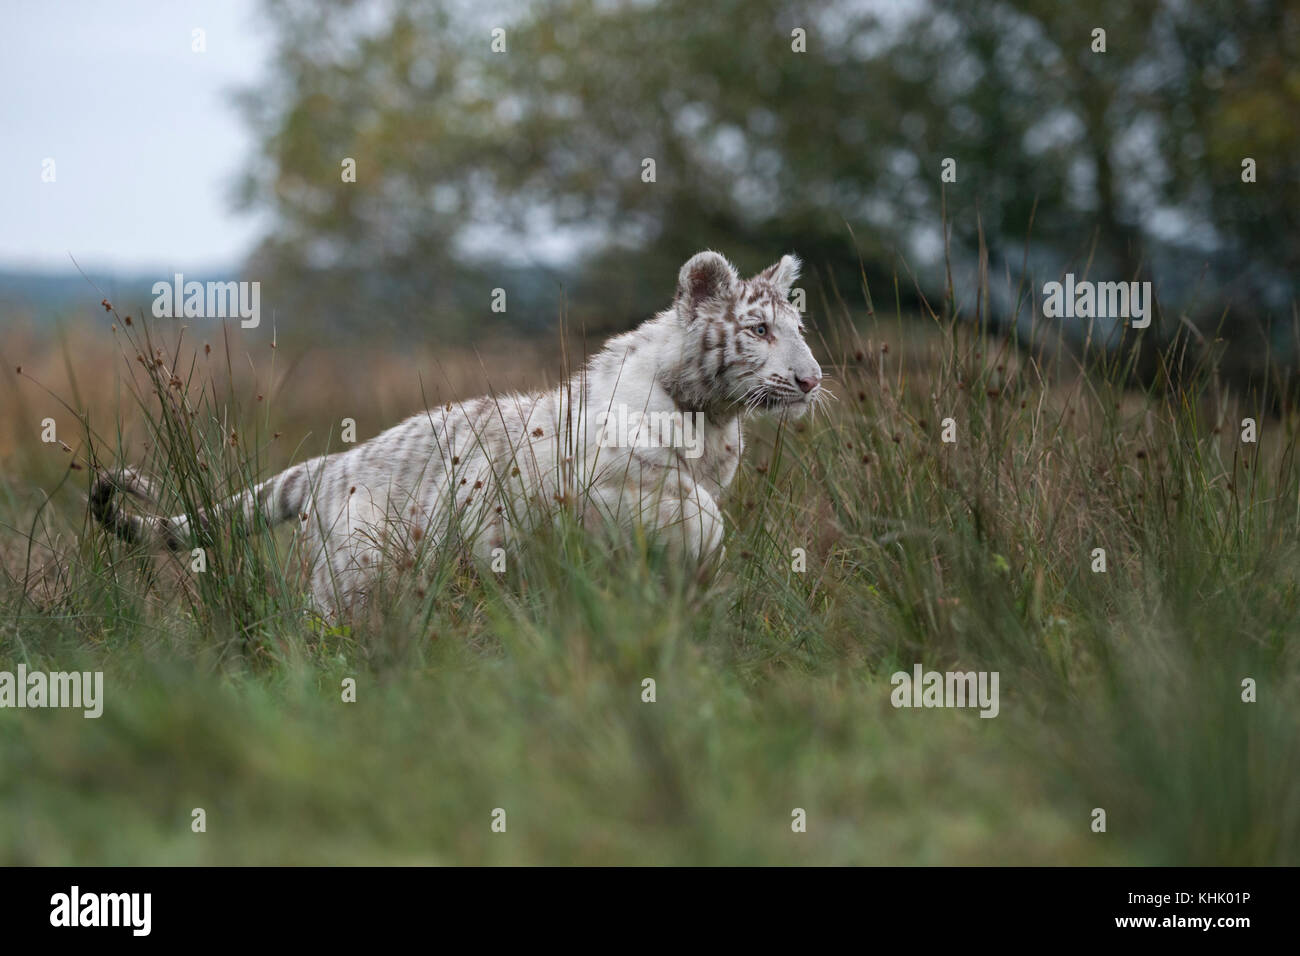 Königlicher Bengaler Tiger / Königstiger ( Panthera tigris ), große Katze in Aktion, Laufen, Springen, Jagen, auf Grünland, Seitenansicht, typische Umgebung. Stockfoto